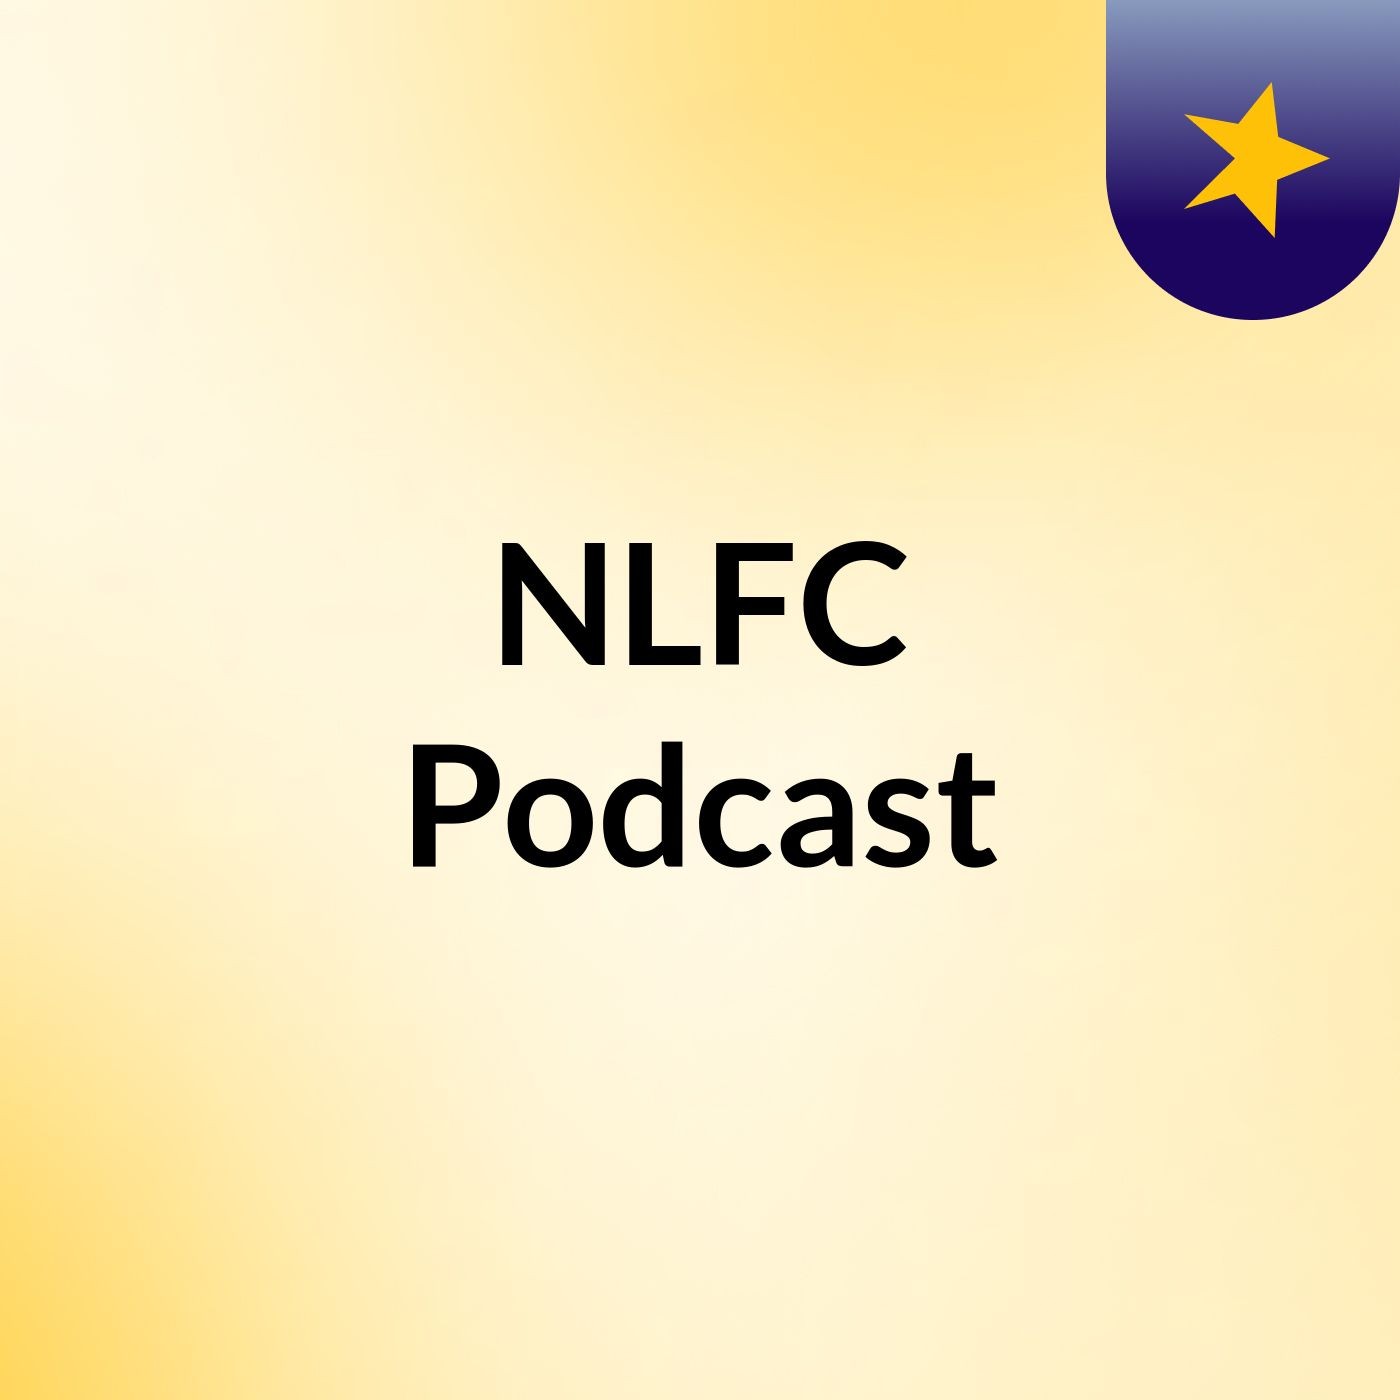 NLFC Podcast